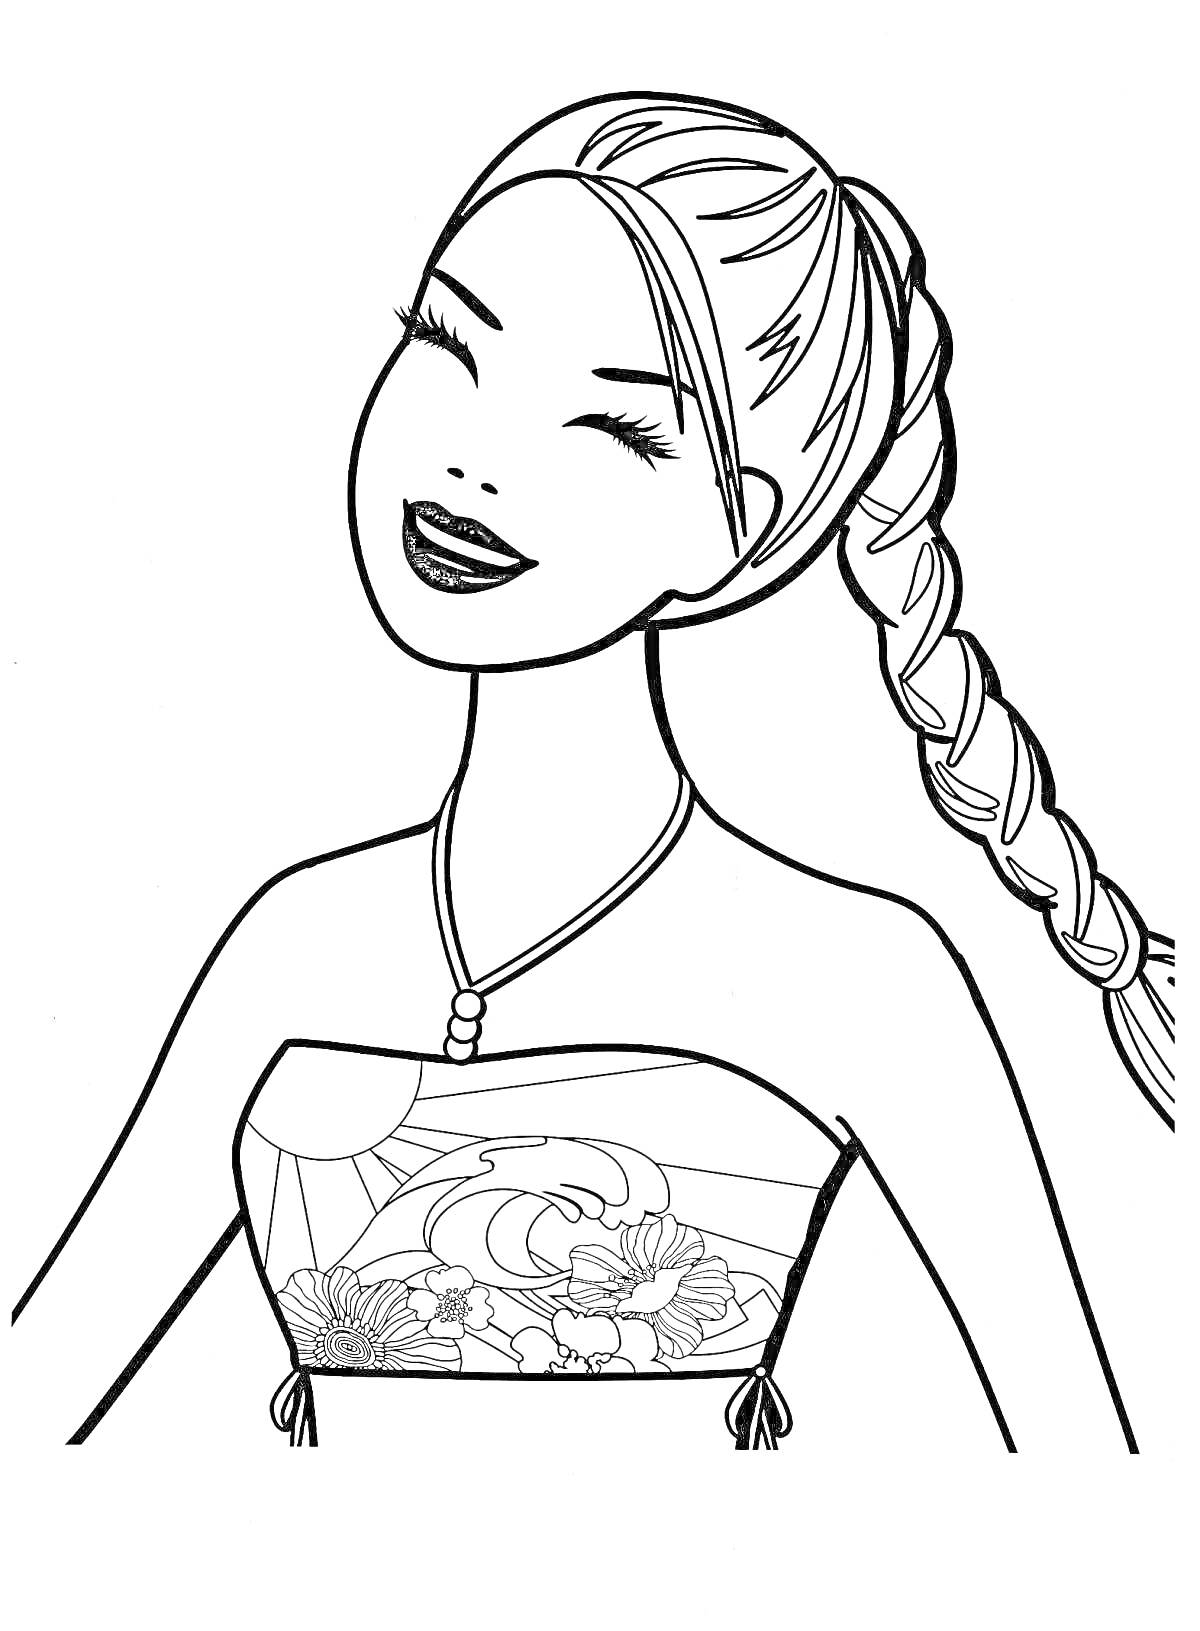 Раскраска Девочка с длинной косой и украшением на шее в платье с цветочным узором